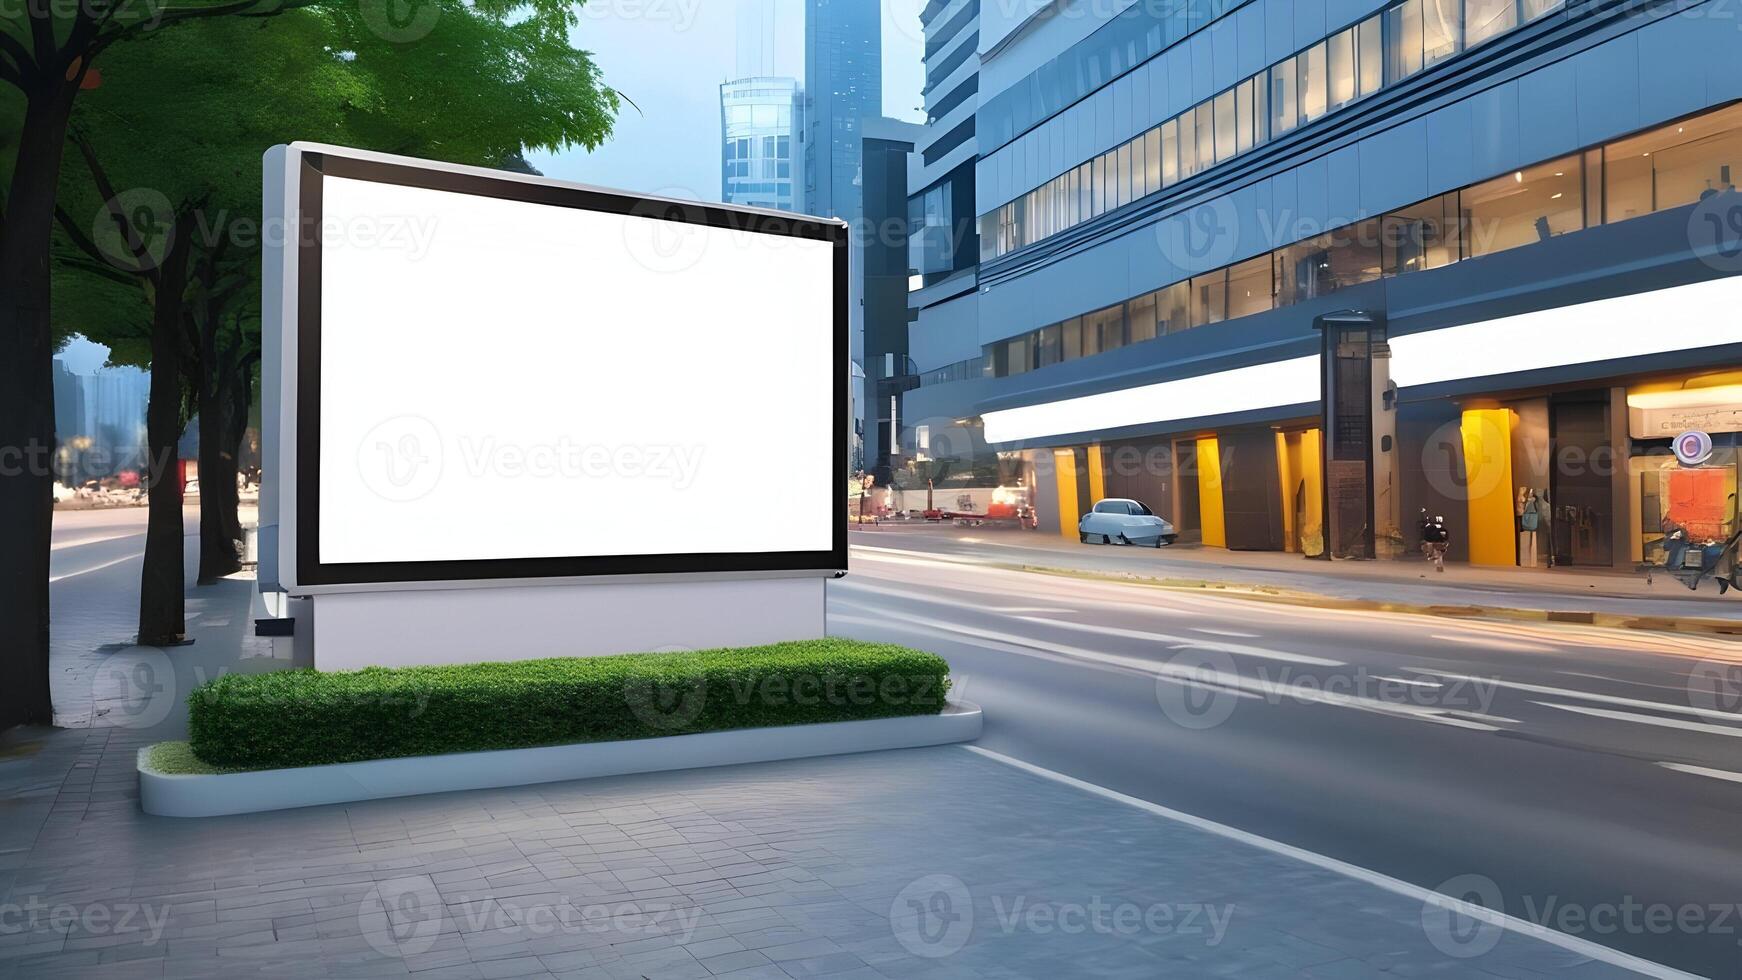 Blank white billboard mockup, advertisement billboard on roadside in city photo